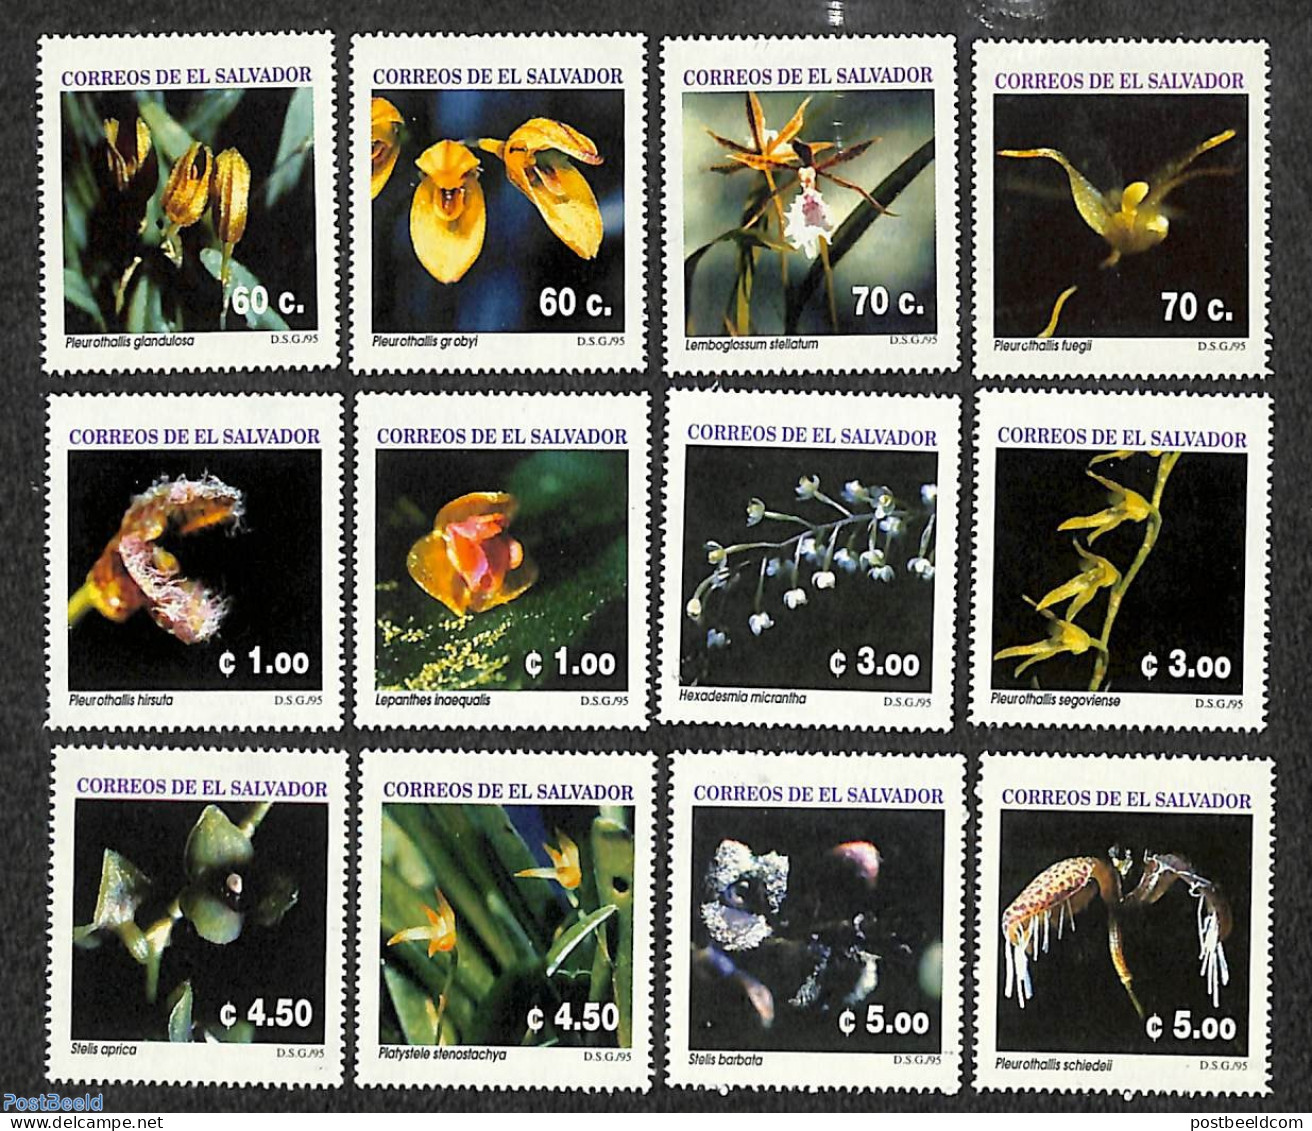 El Salvador 1995 Orchids 12v, Mint NH, Nature - Flowers & Plants - Orchids - Salvador